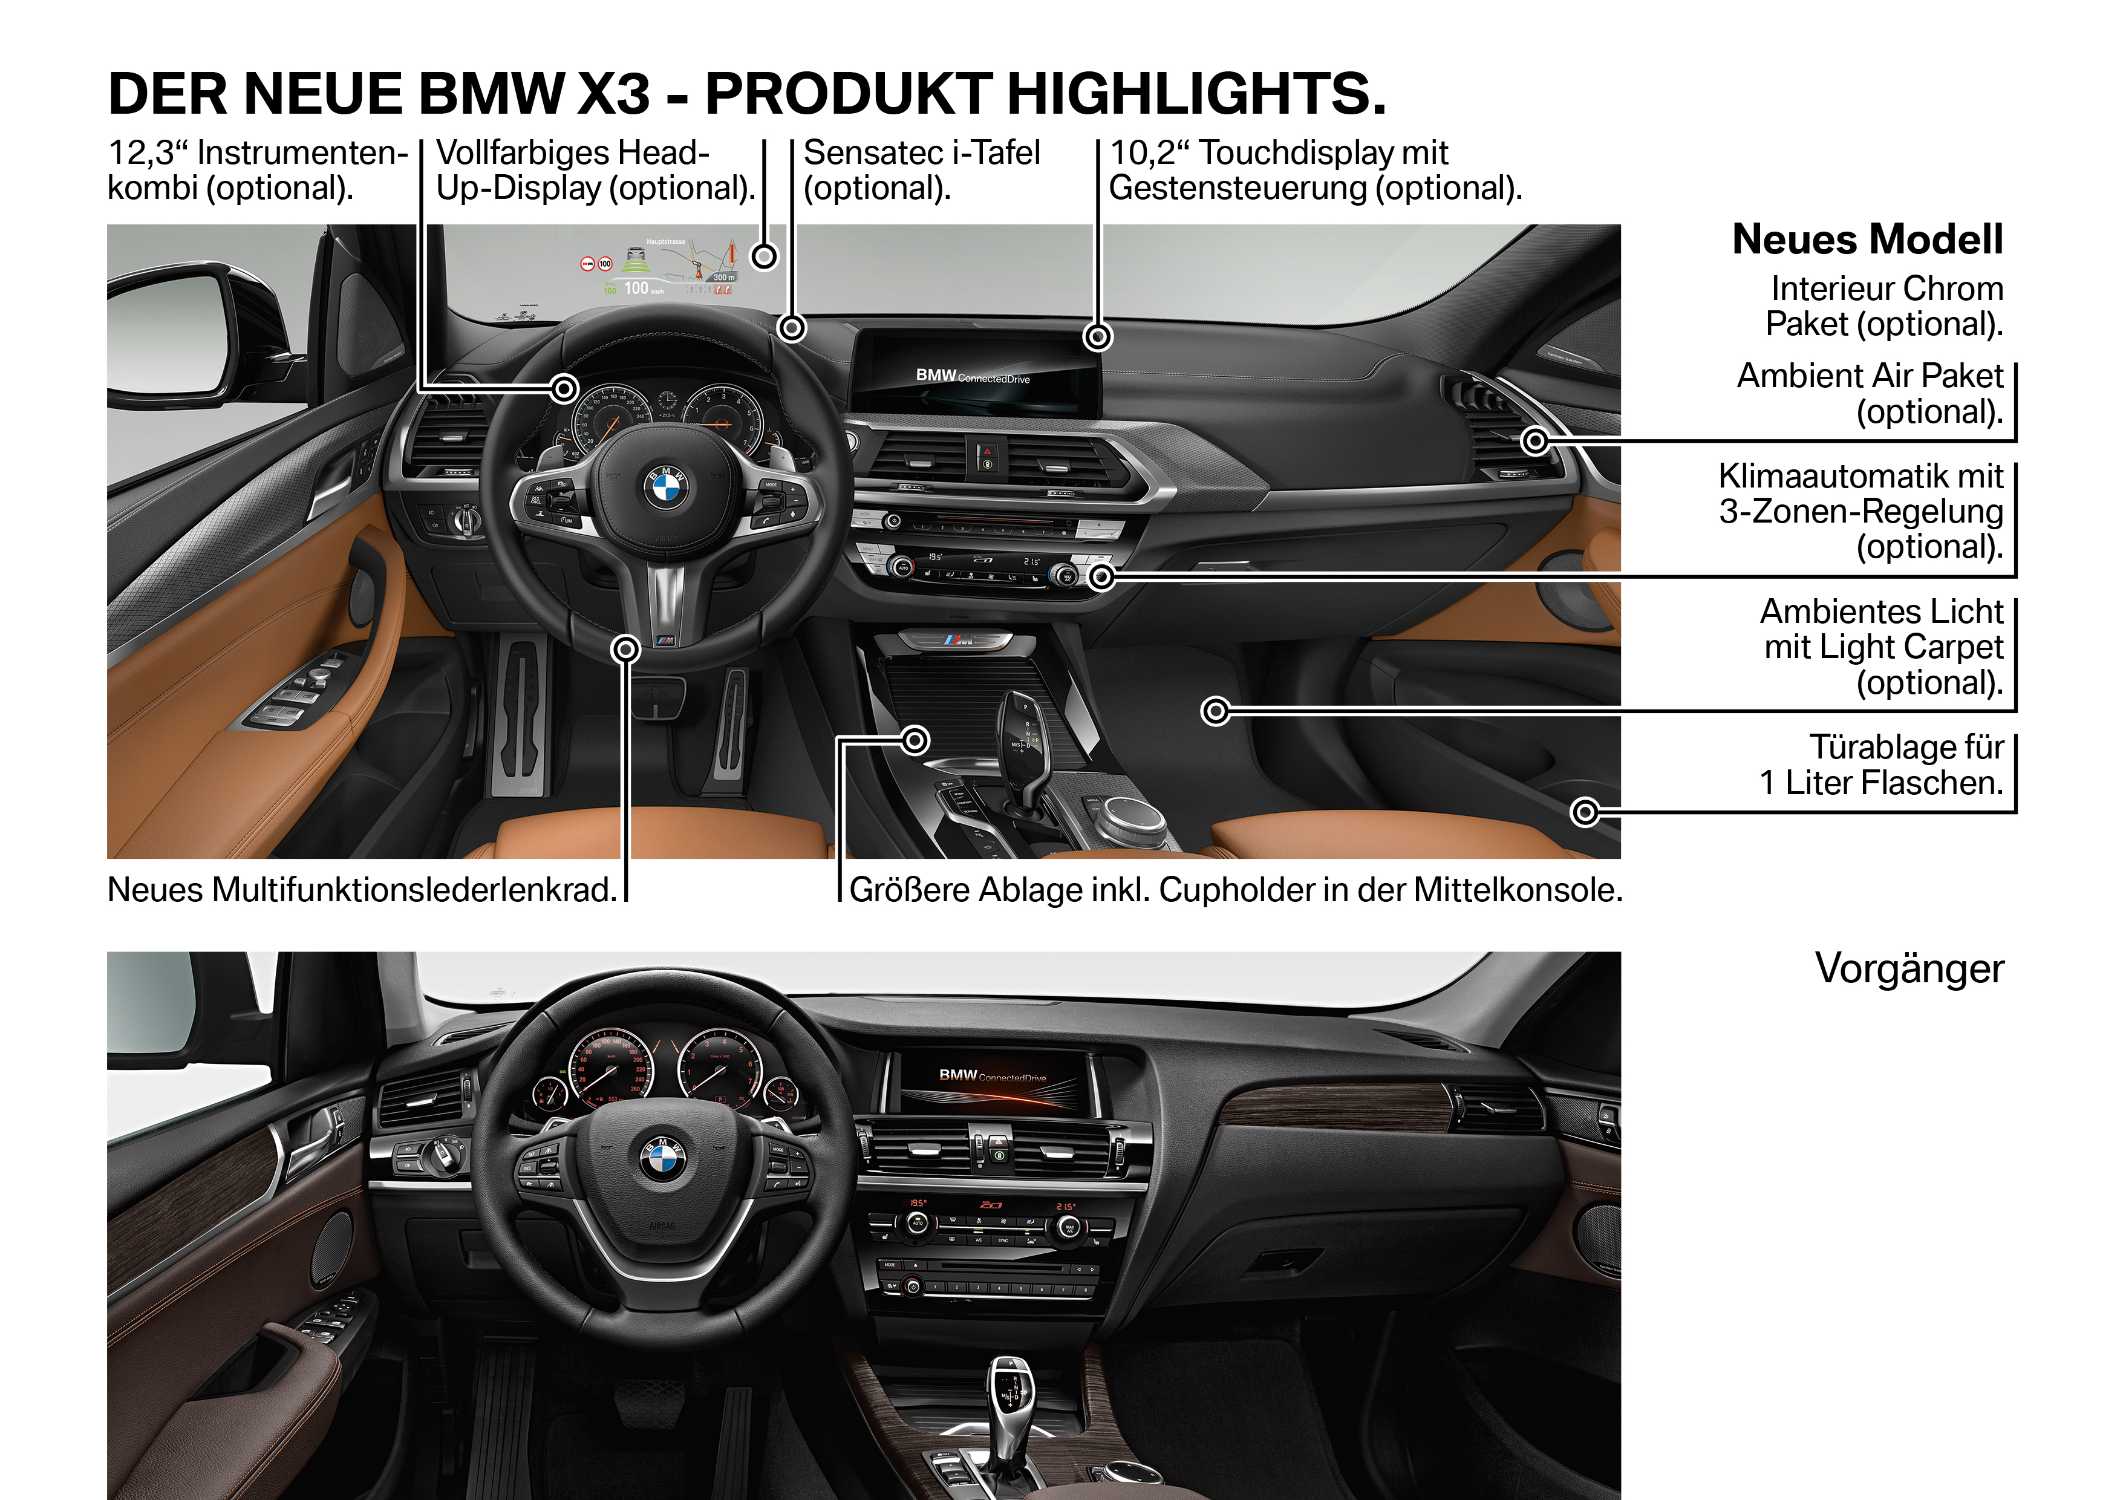 Der neue BMW X3 - Technische Highlights (06/2017).